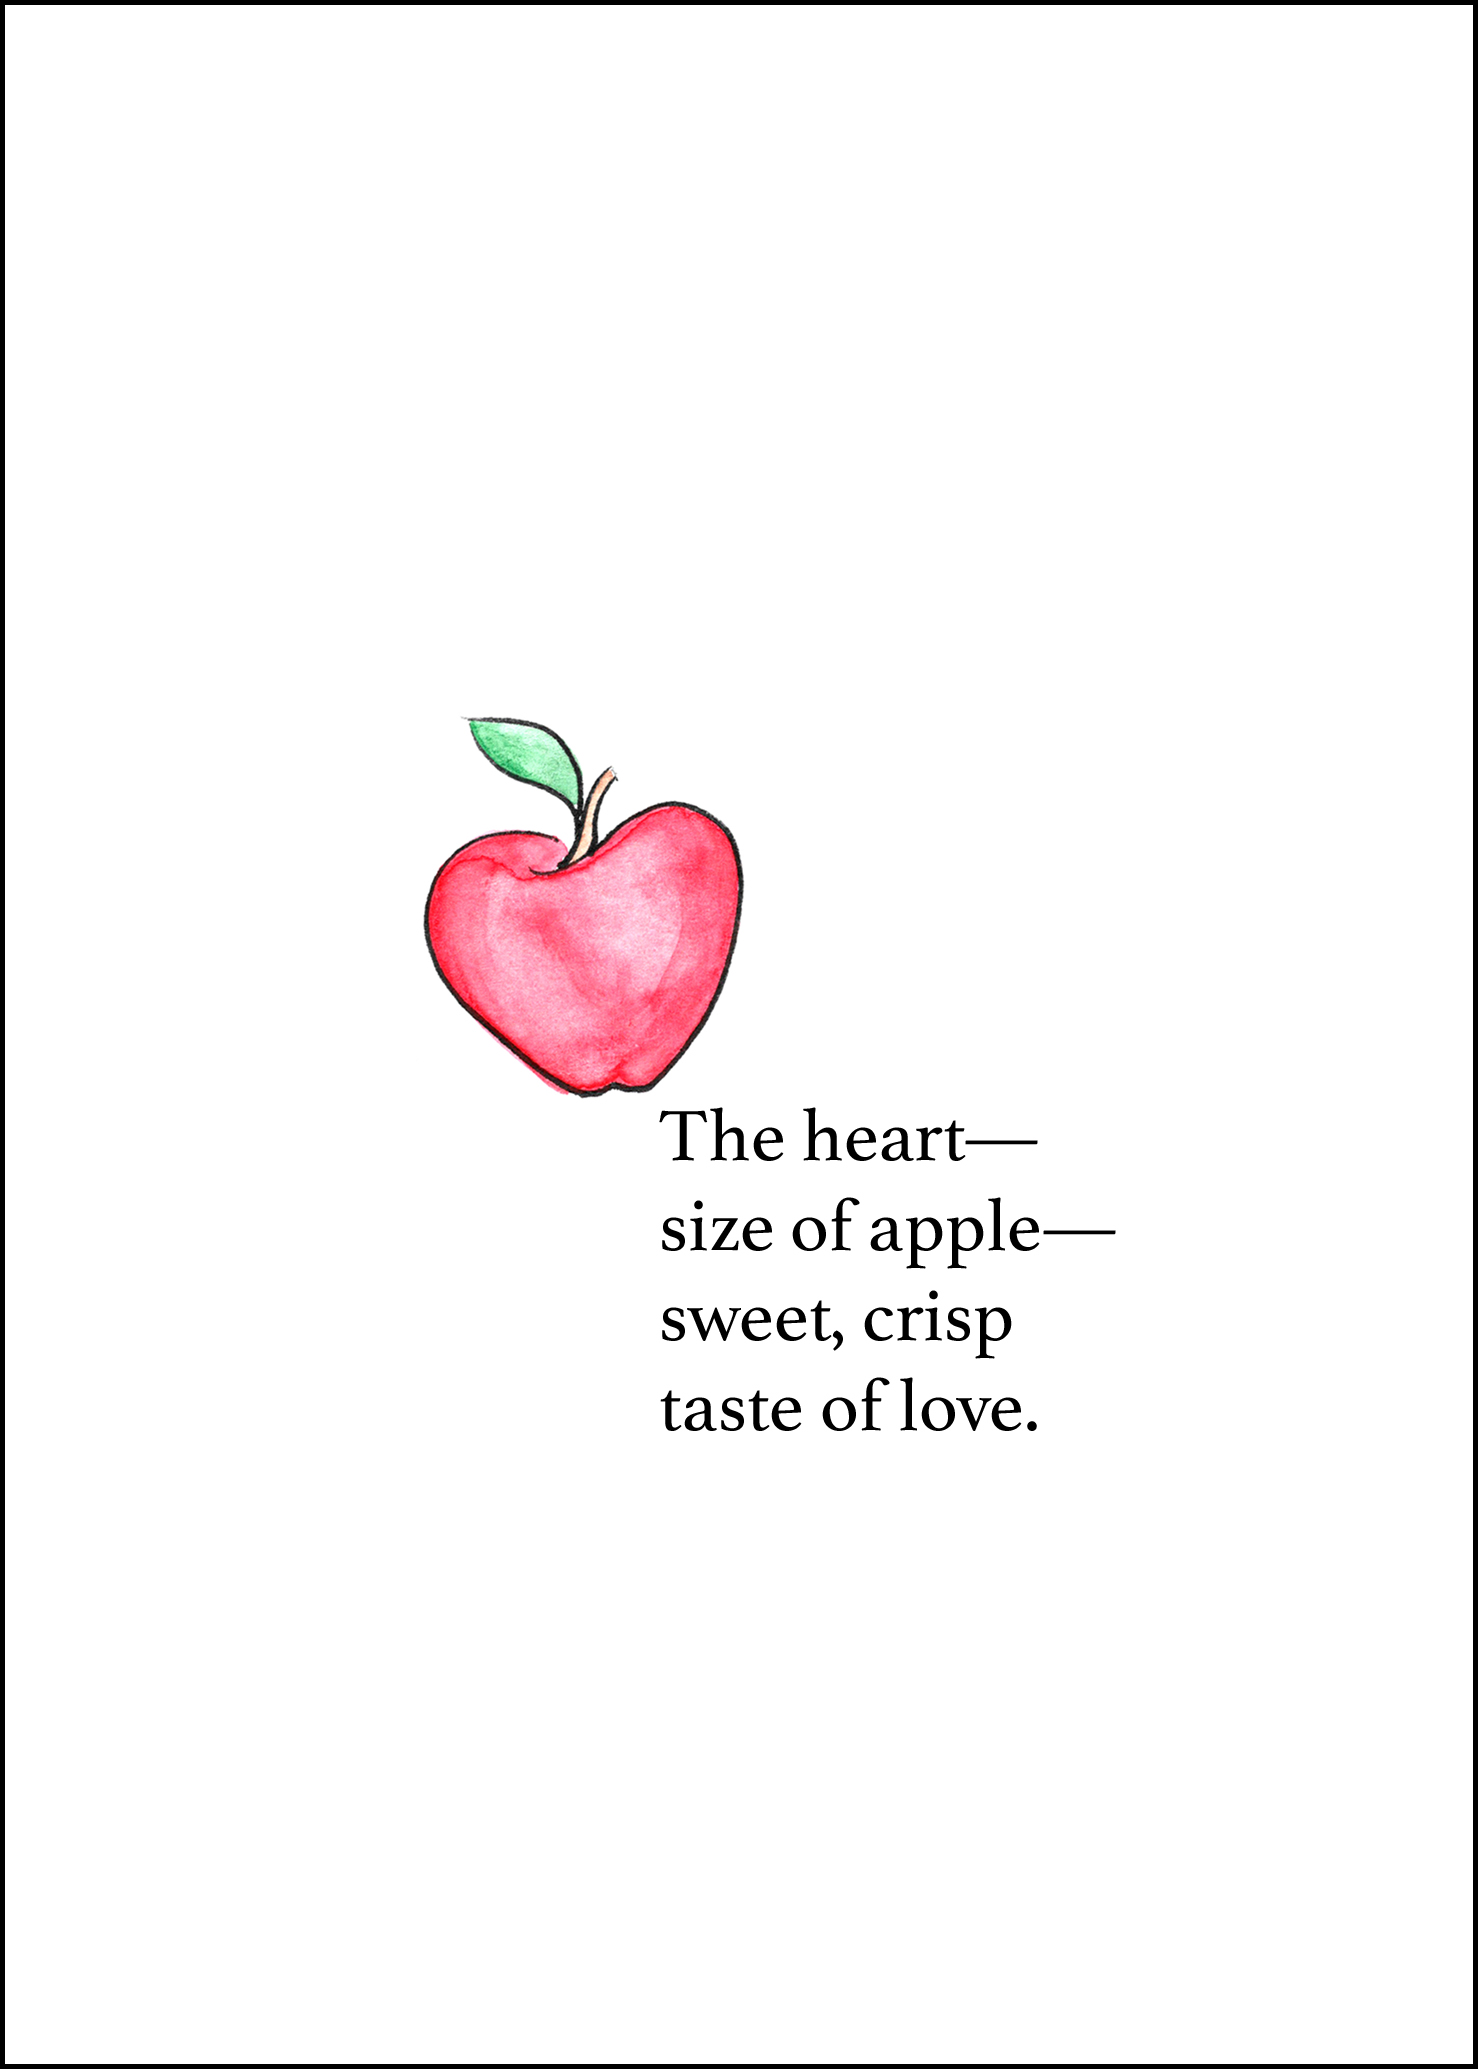 Taste of Love - by Anna Elkins